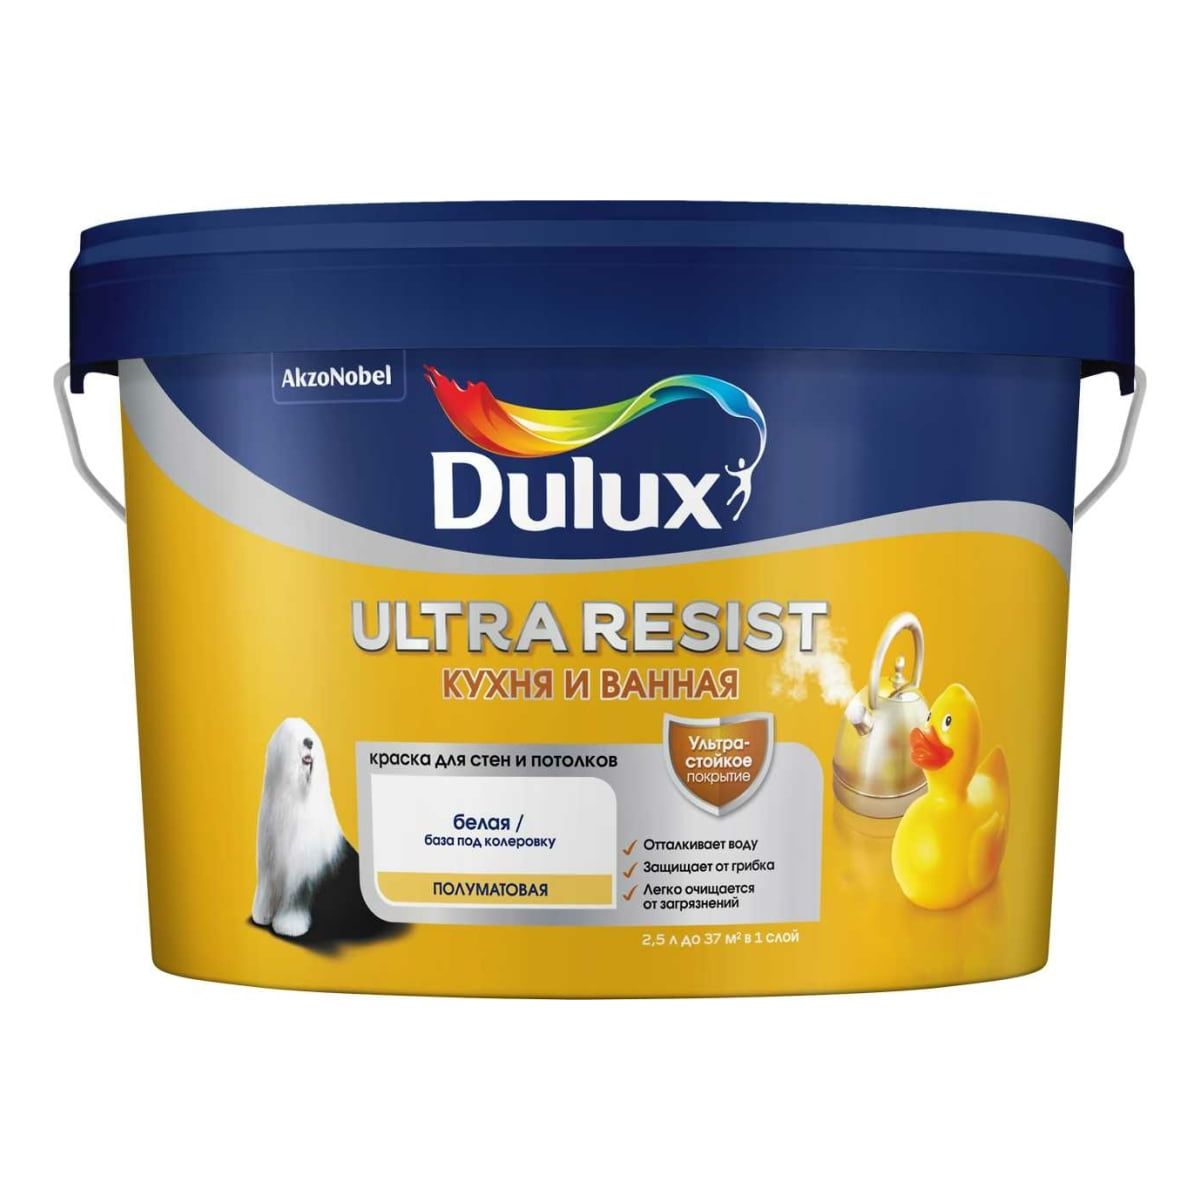 Краска Dulux Ultra Resist кухня и ванная полуматовая, BW, 2,5 л novol лак ultra klarlack 300 2к акриловый банка 0 5л с отвердителем 0 25л 99223 99421